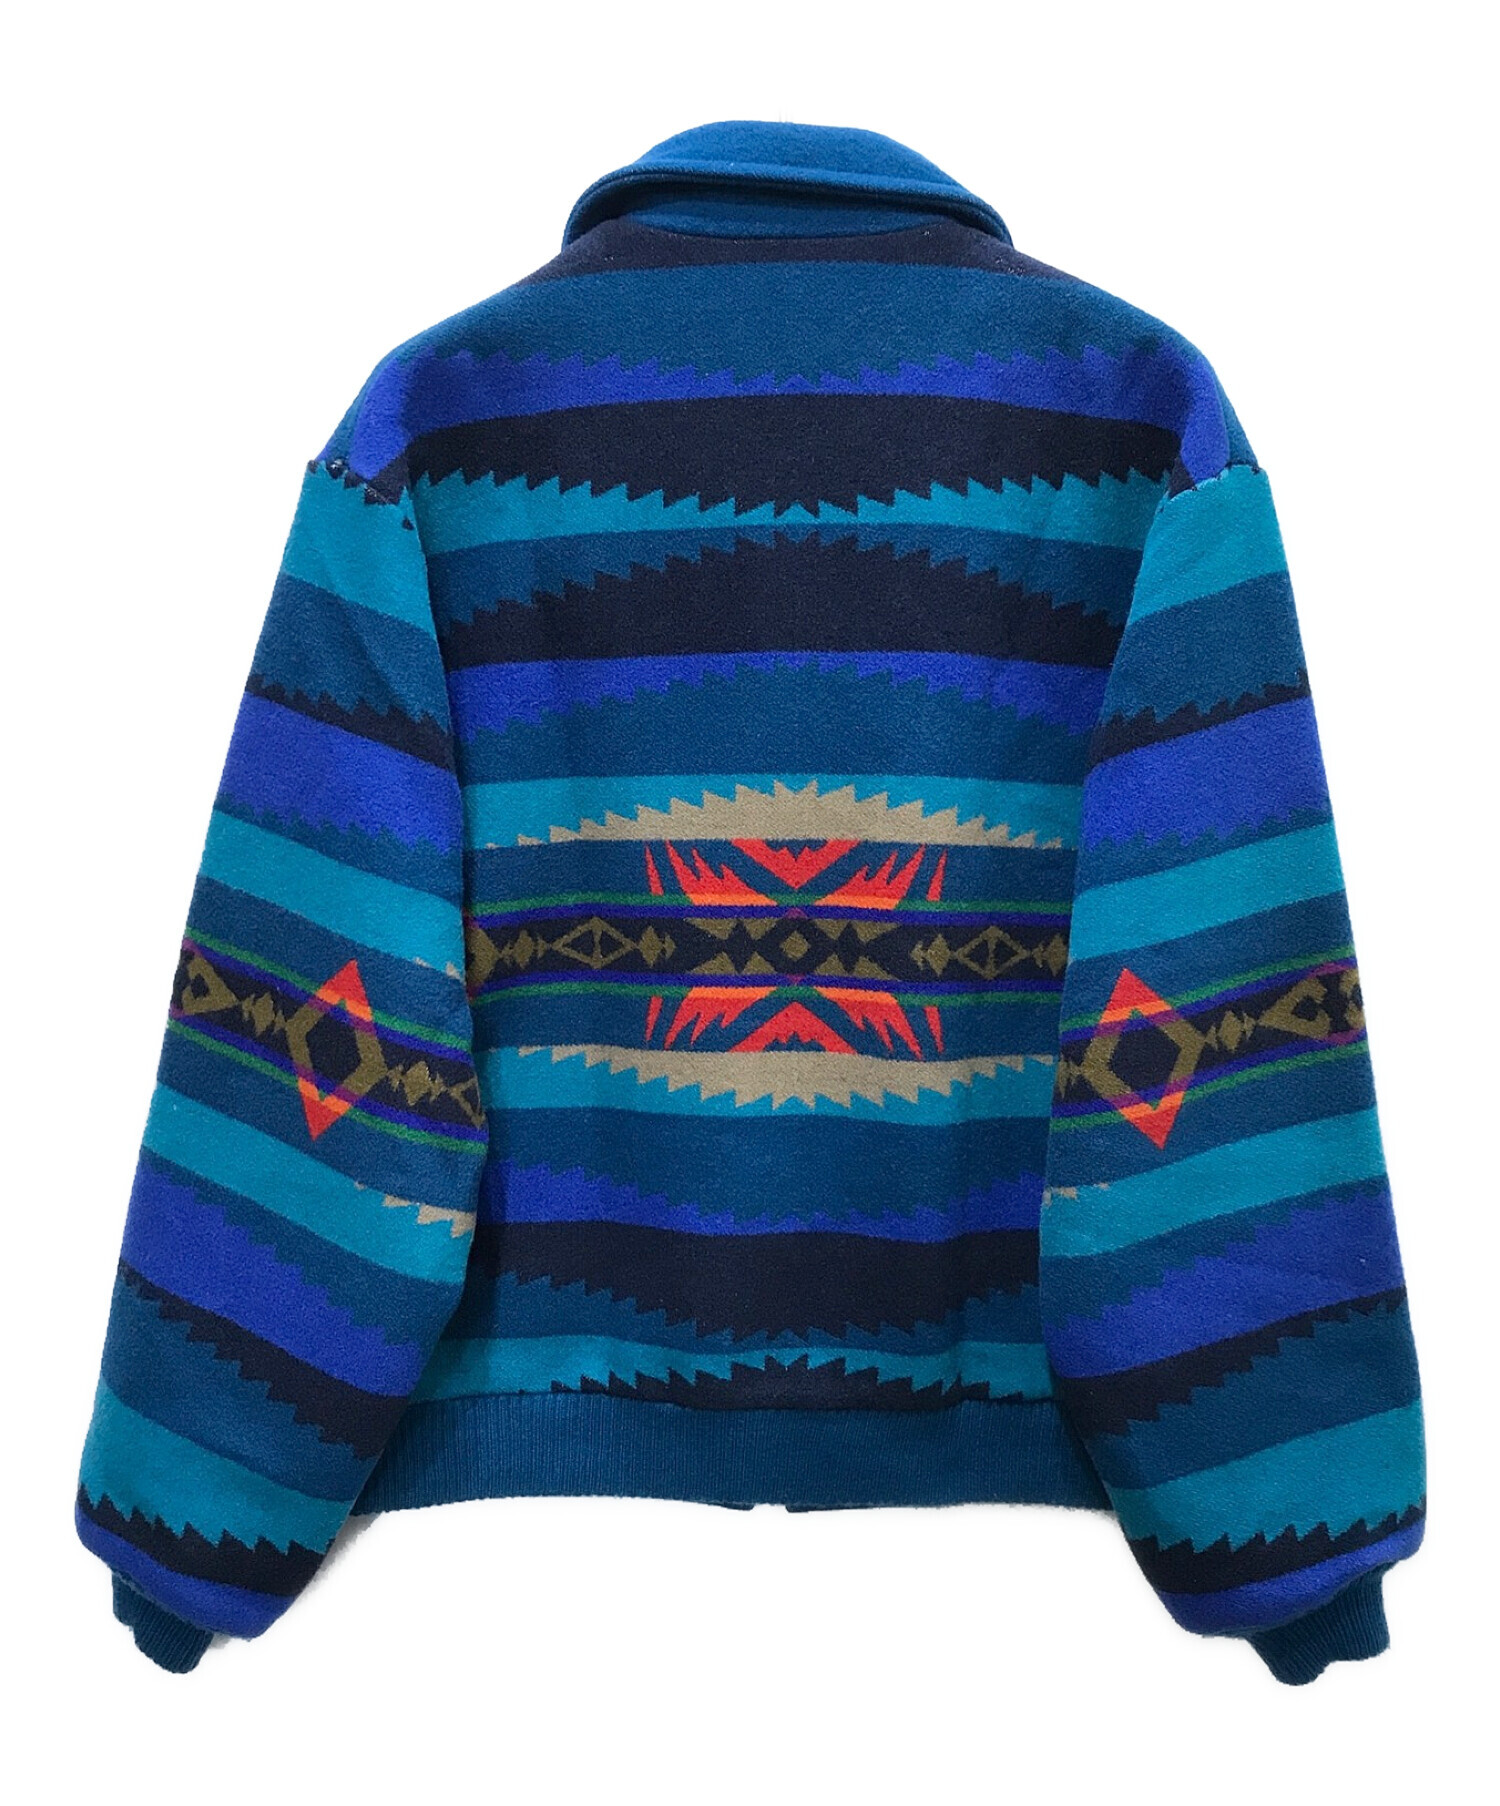 PENDLETON (ペンドルトン) ネイティブ柄ウールジャケット ブルー サイズ:LARGE